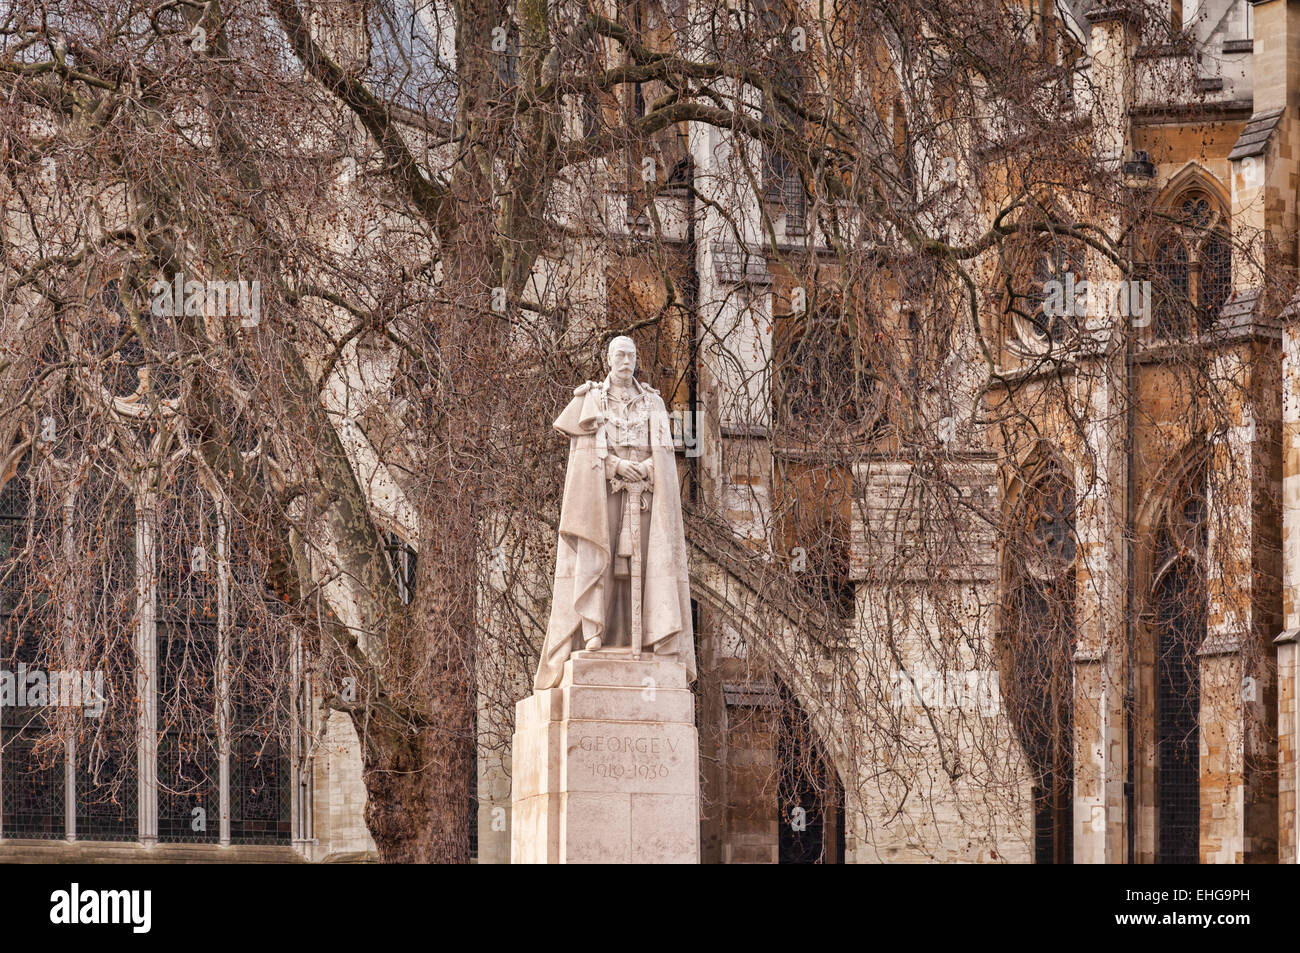 Statue du Roi George V à l'extérieur de l'abbaye de Westminster, Londres, Angleterre. Banque D'Images